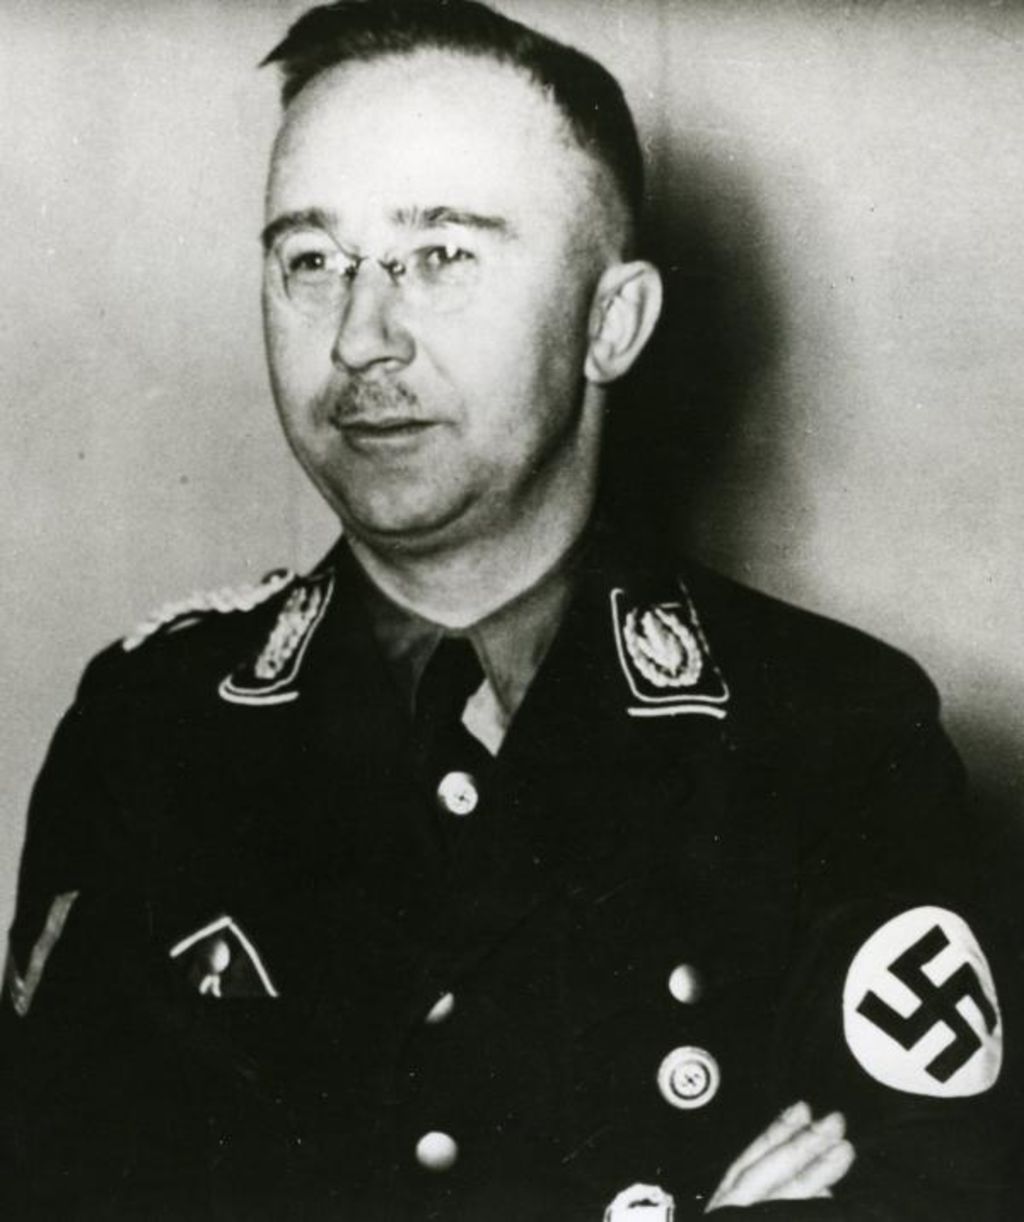 Himmler’s Antiquity